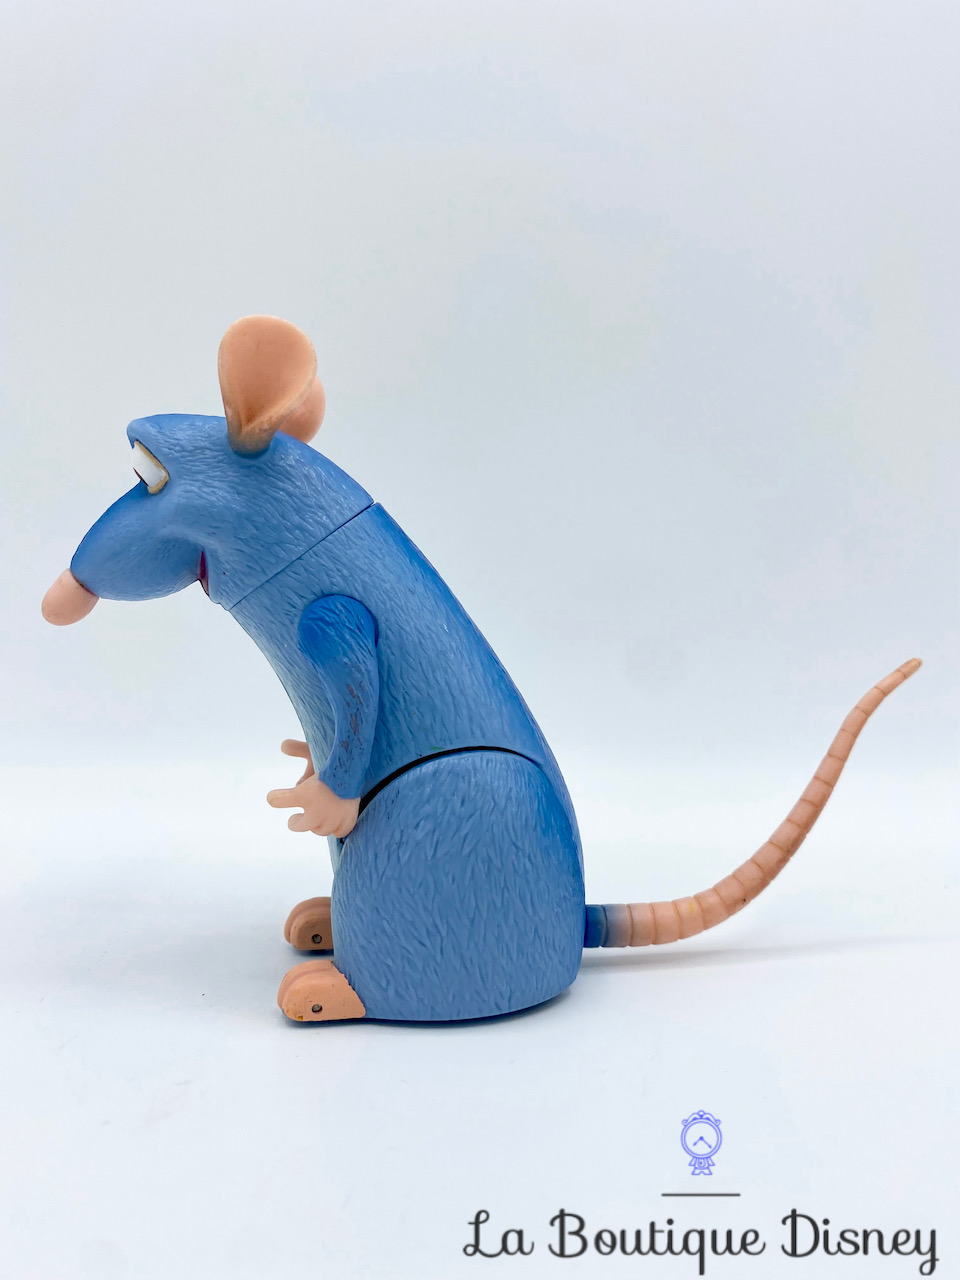 figurine-remy-ratatouille-disney-pixar-souris-rat-bleu-roulette-13-cm-4